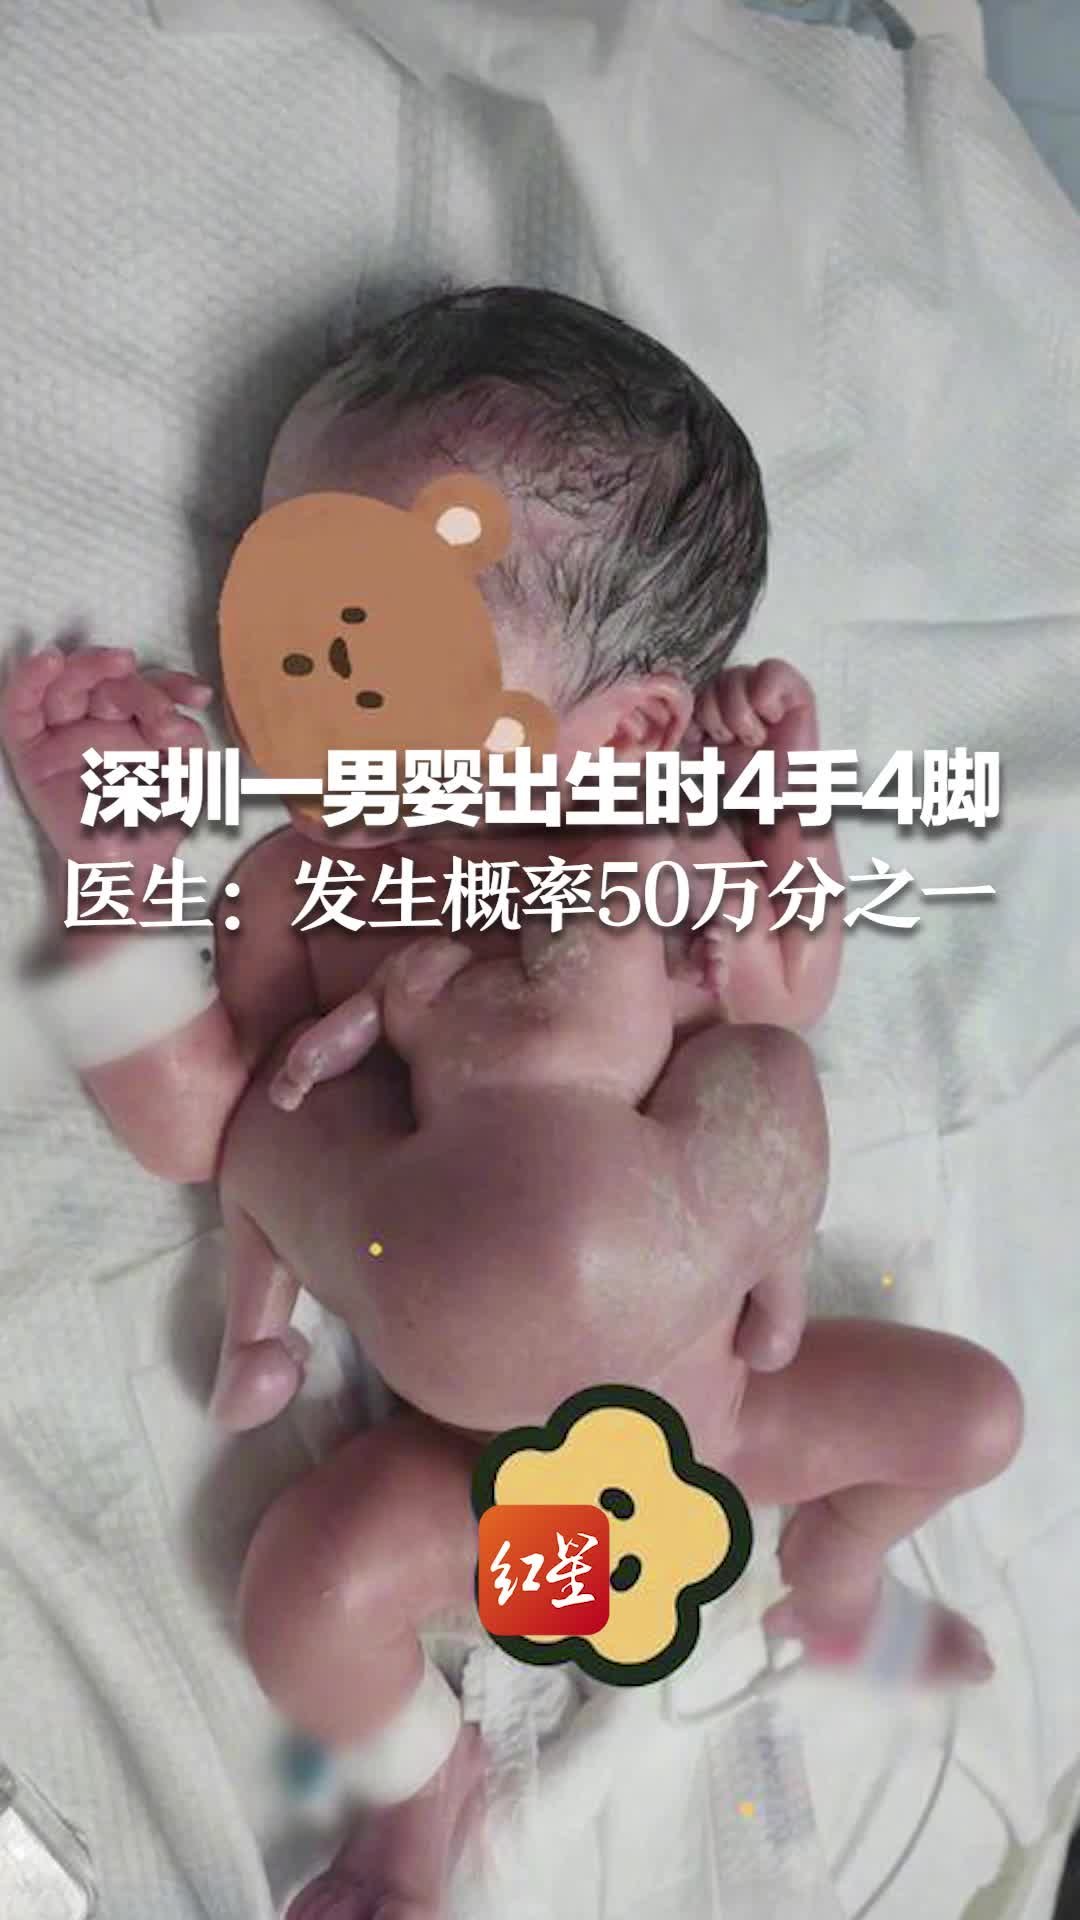 深圳一男婴出生时4手4脚 医生：发生概率50万分之一